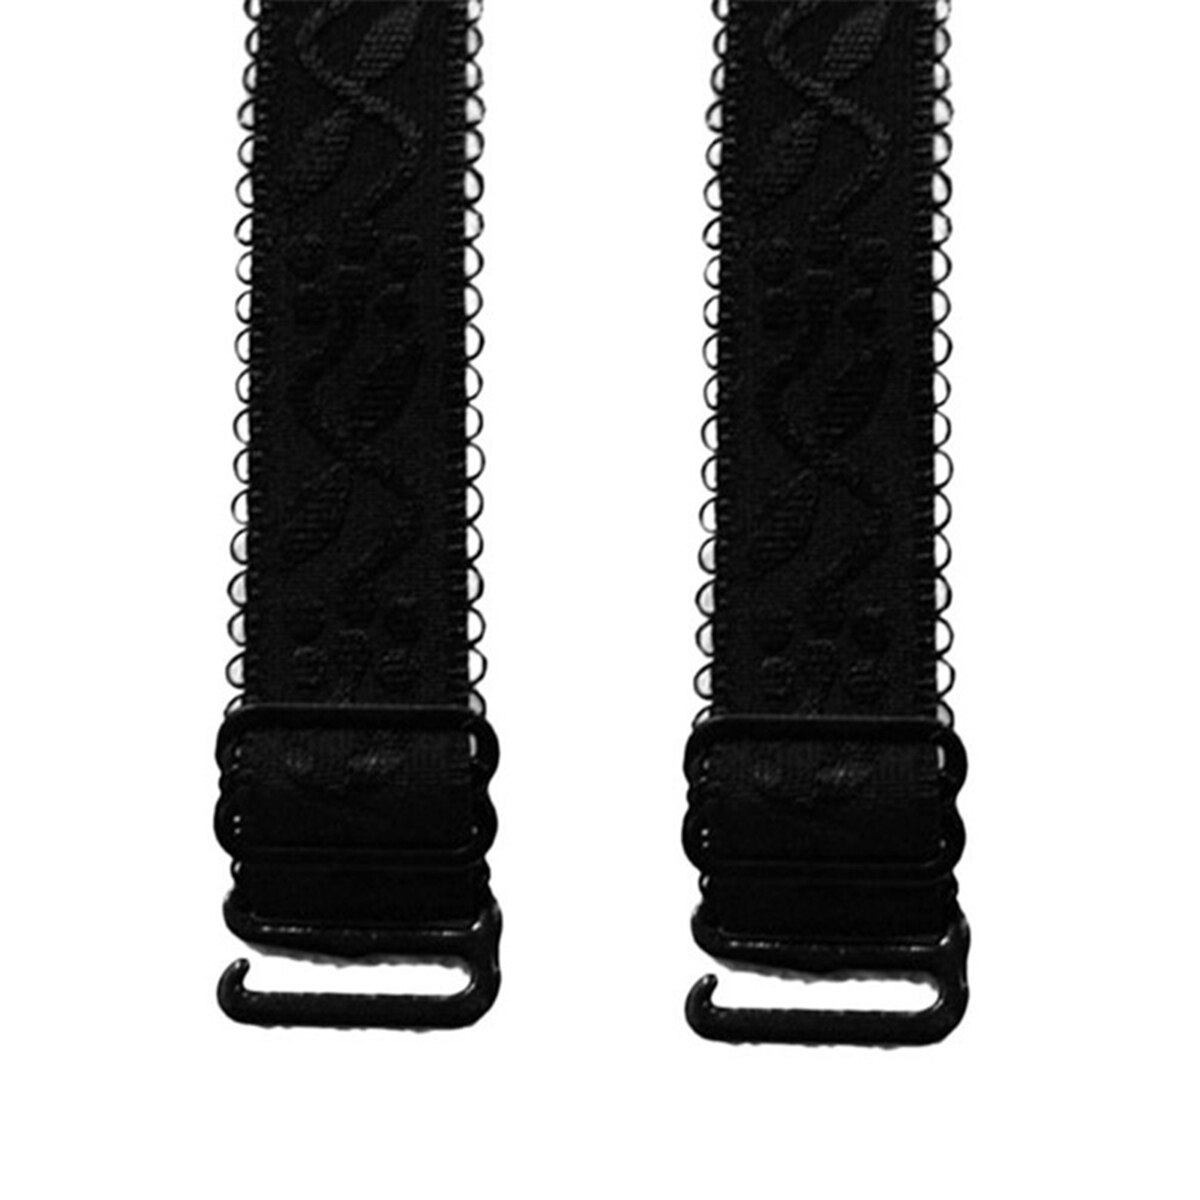 Vrouwen 1.5 cm breedte jacquard verstelbare beha-bandjes 1 paar antislip elastische beha riem